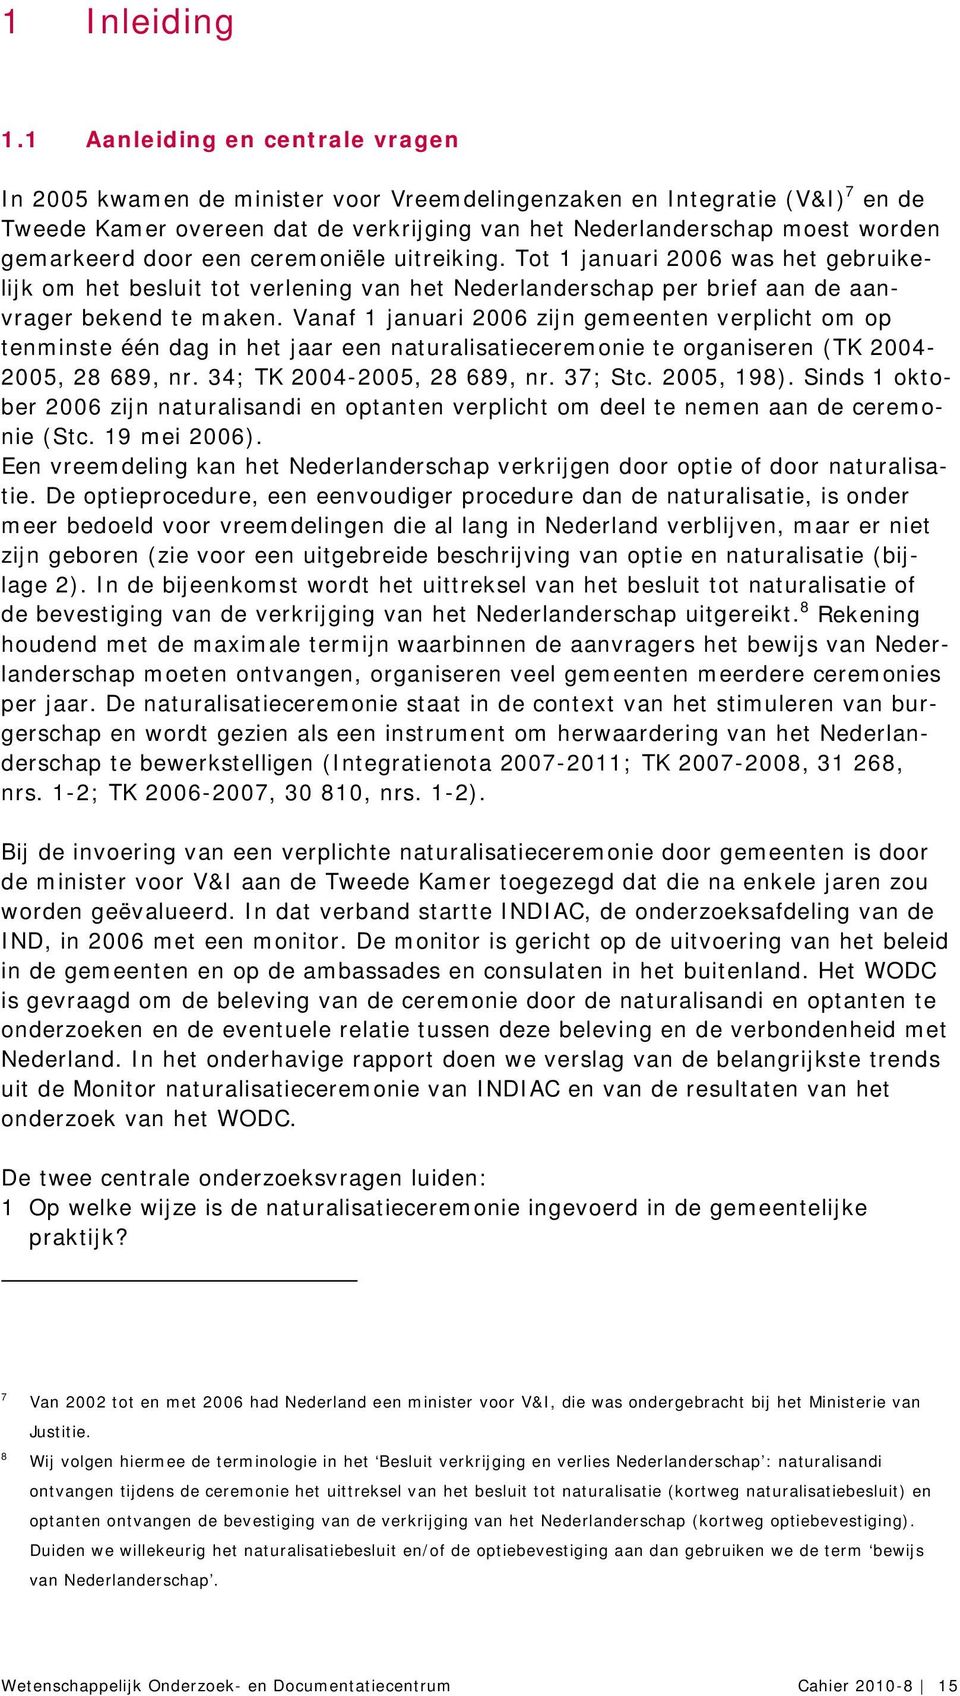 door een ceremoniële uitreiking. Tot 1 januari 2006 was het gebruikelijk om het besluit tot verlening van het Nederlanderschap per brief aan de aanvrager bekend te maken.